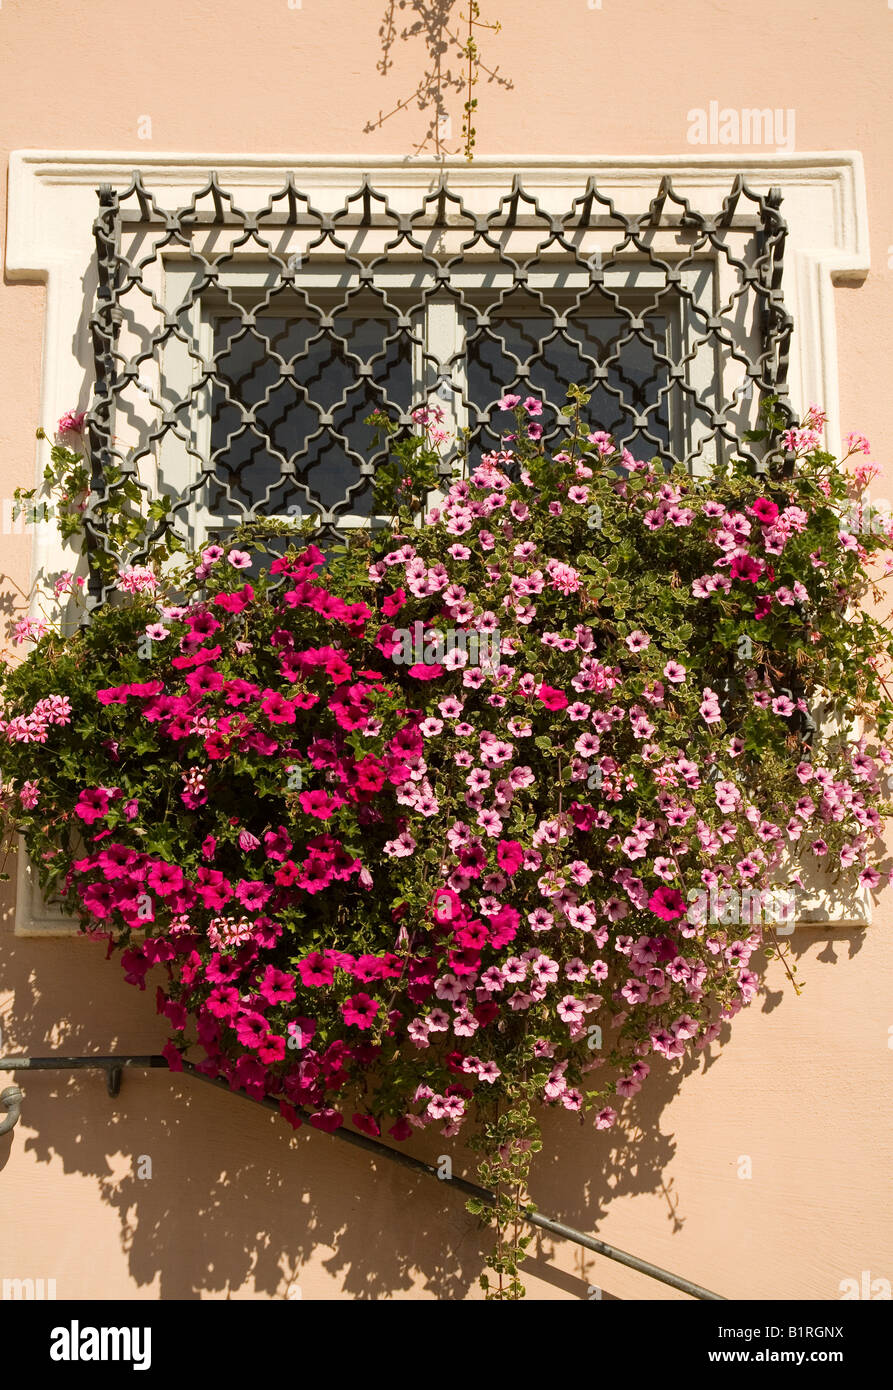 Une fenêtre avec des décorations de fleurs suspendus, Guild Hall et fenêtre ornement, Greding, Greding, Bavaria, Germany, Europe Banque D'Images